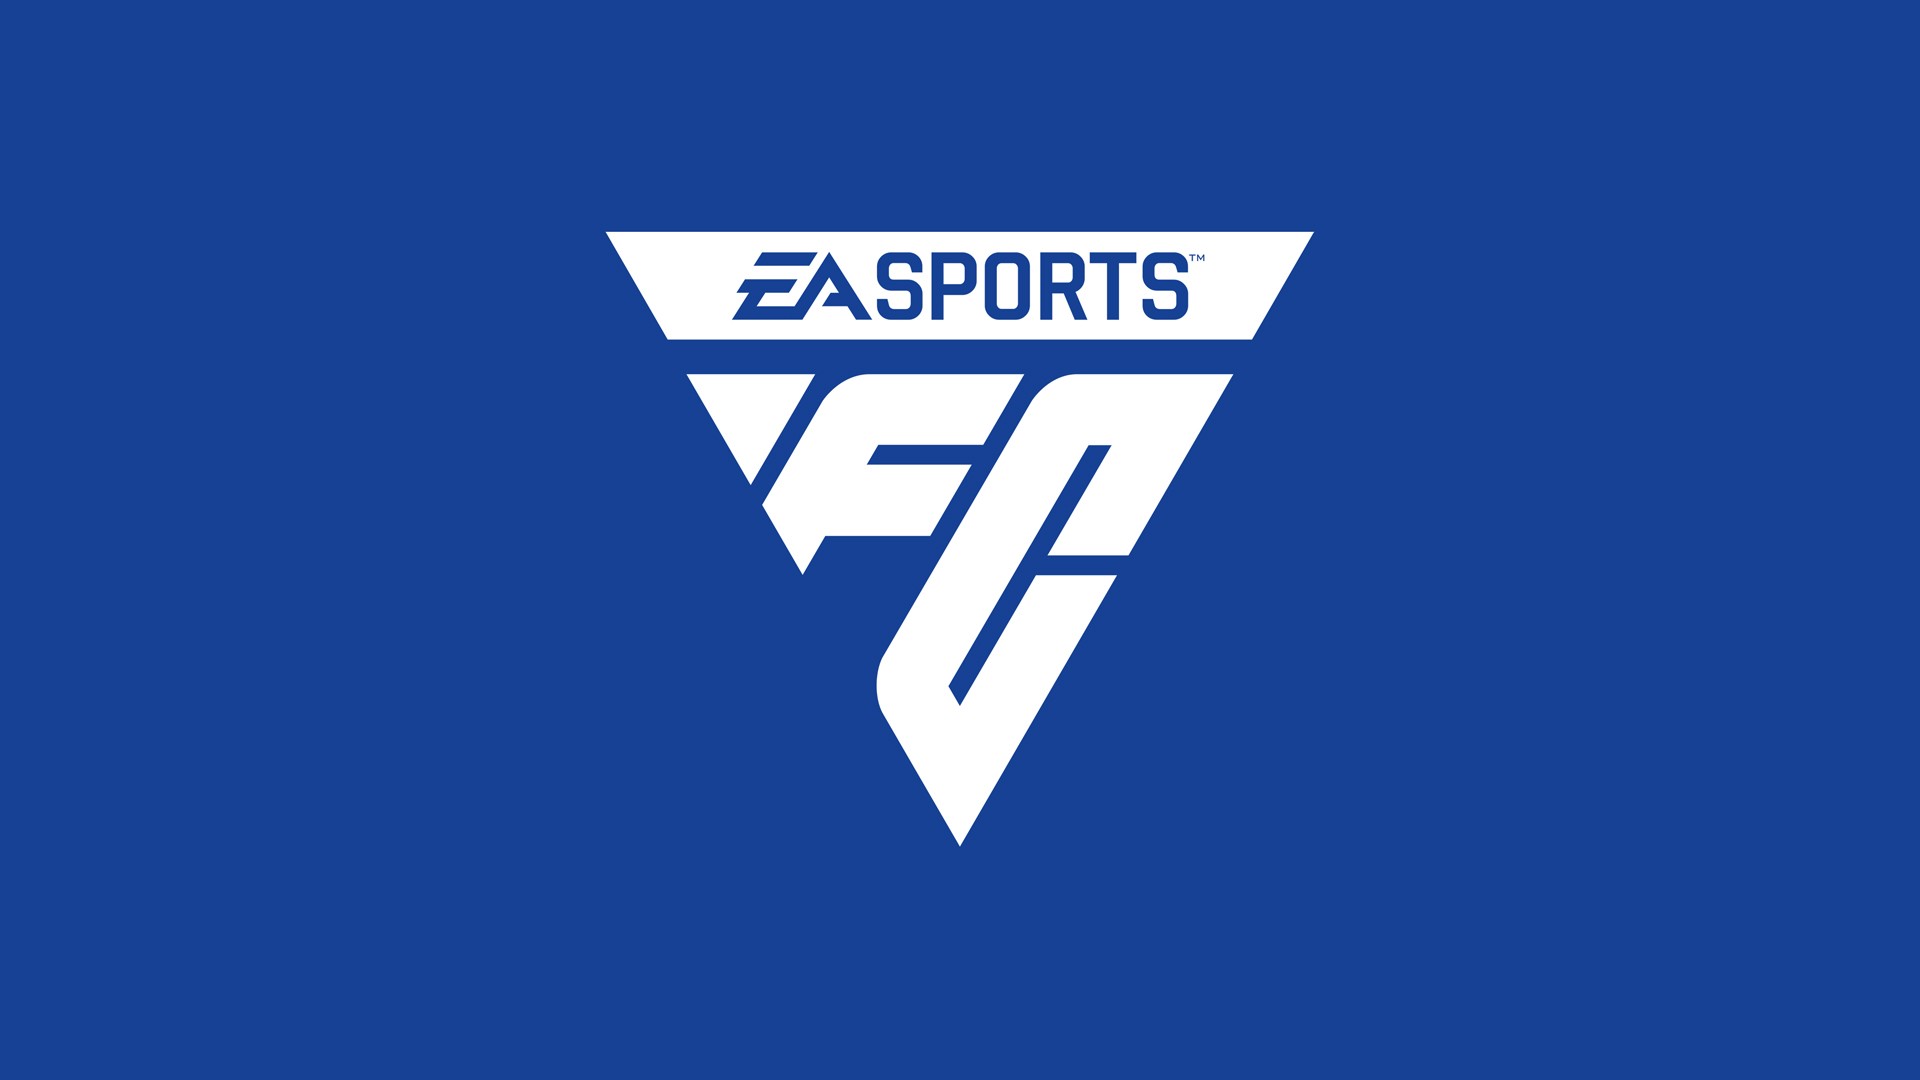 Console PlayStation 5 + EA Sports FC 24 em Promoção na Americanas